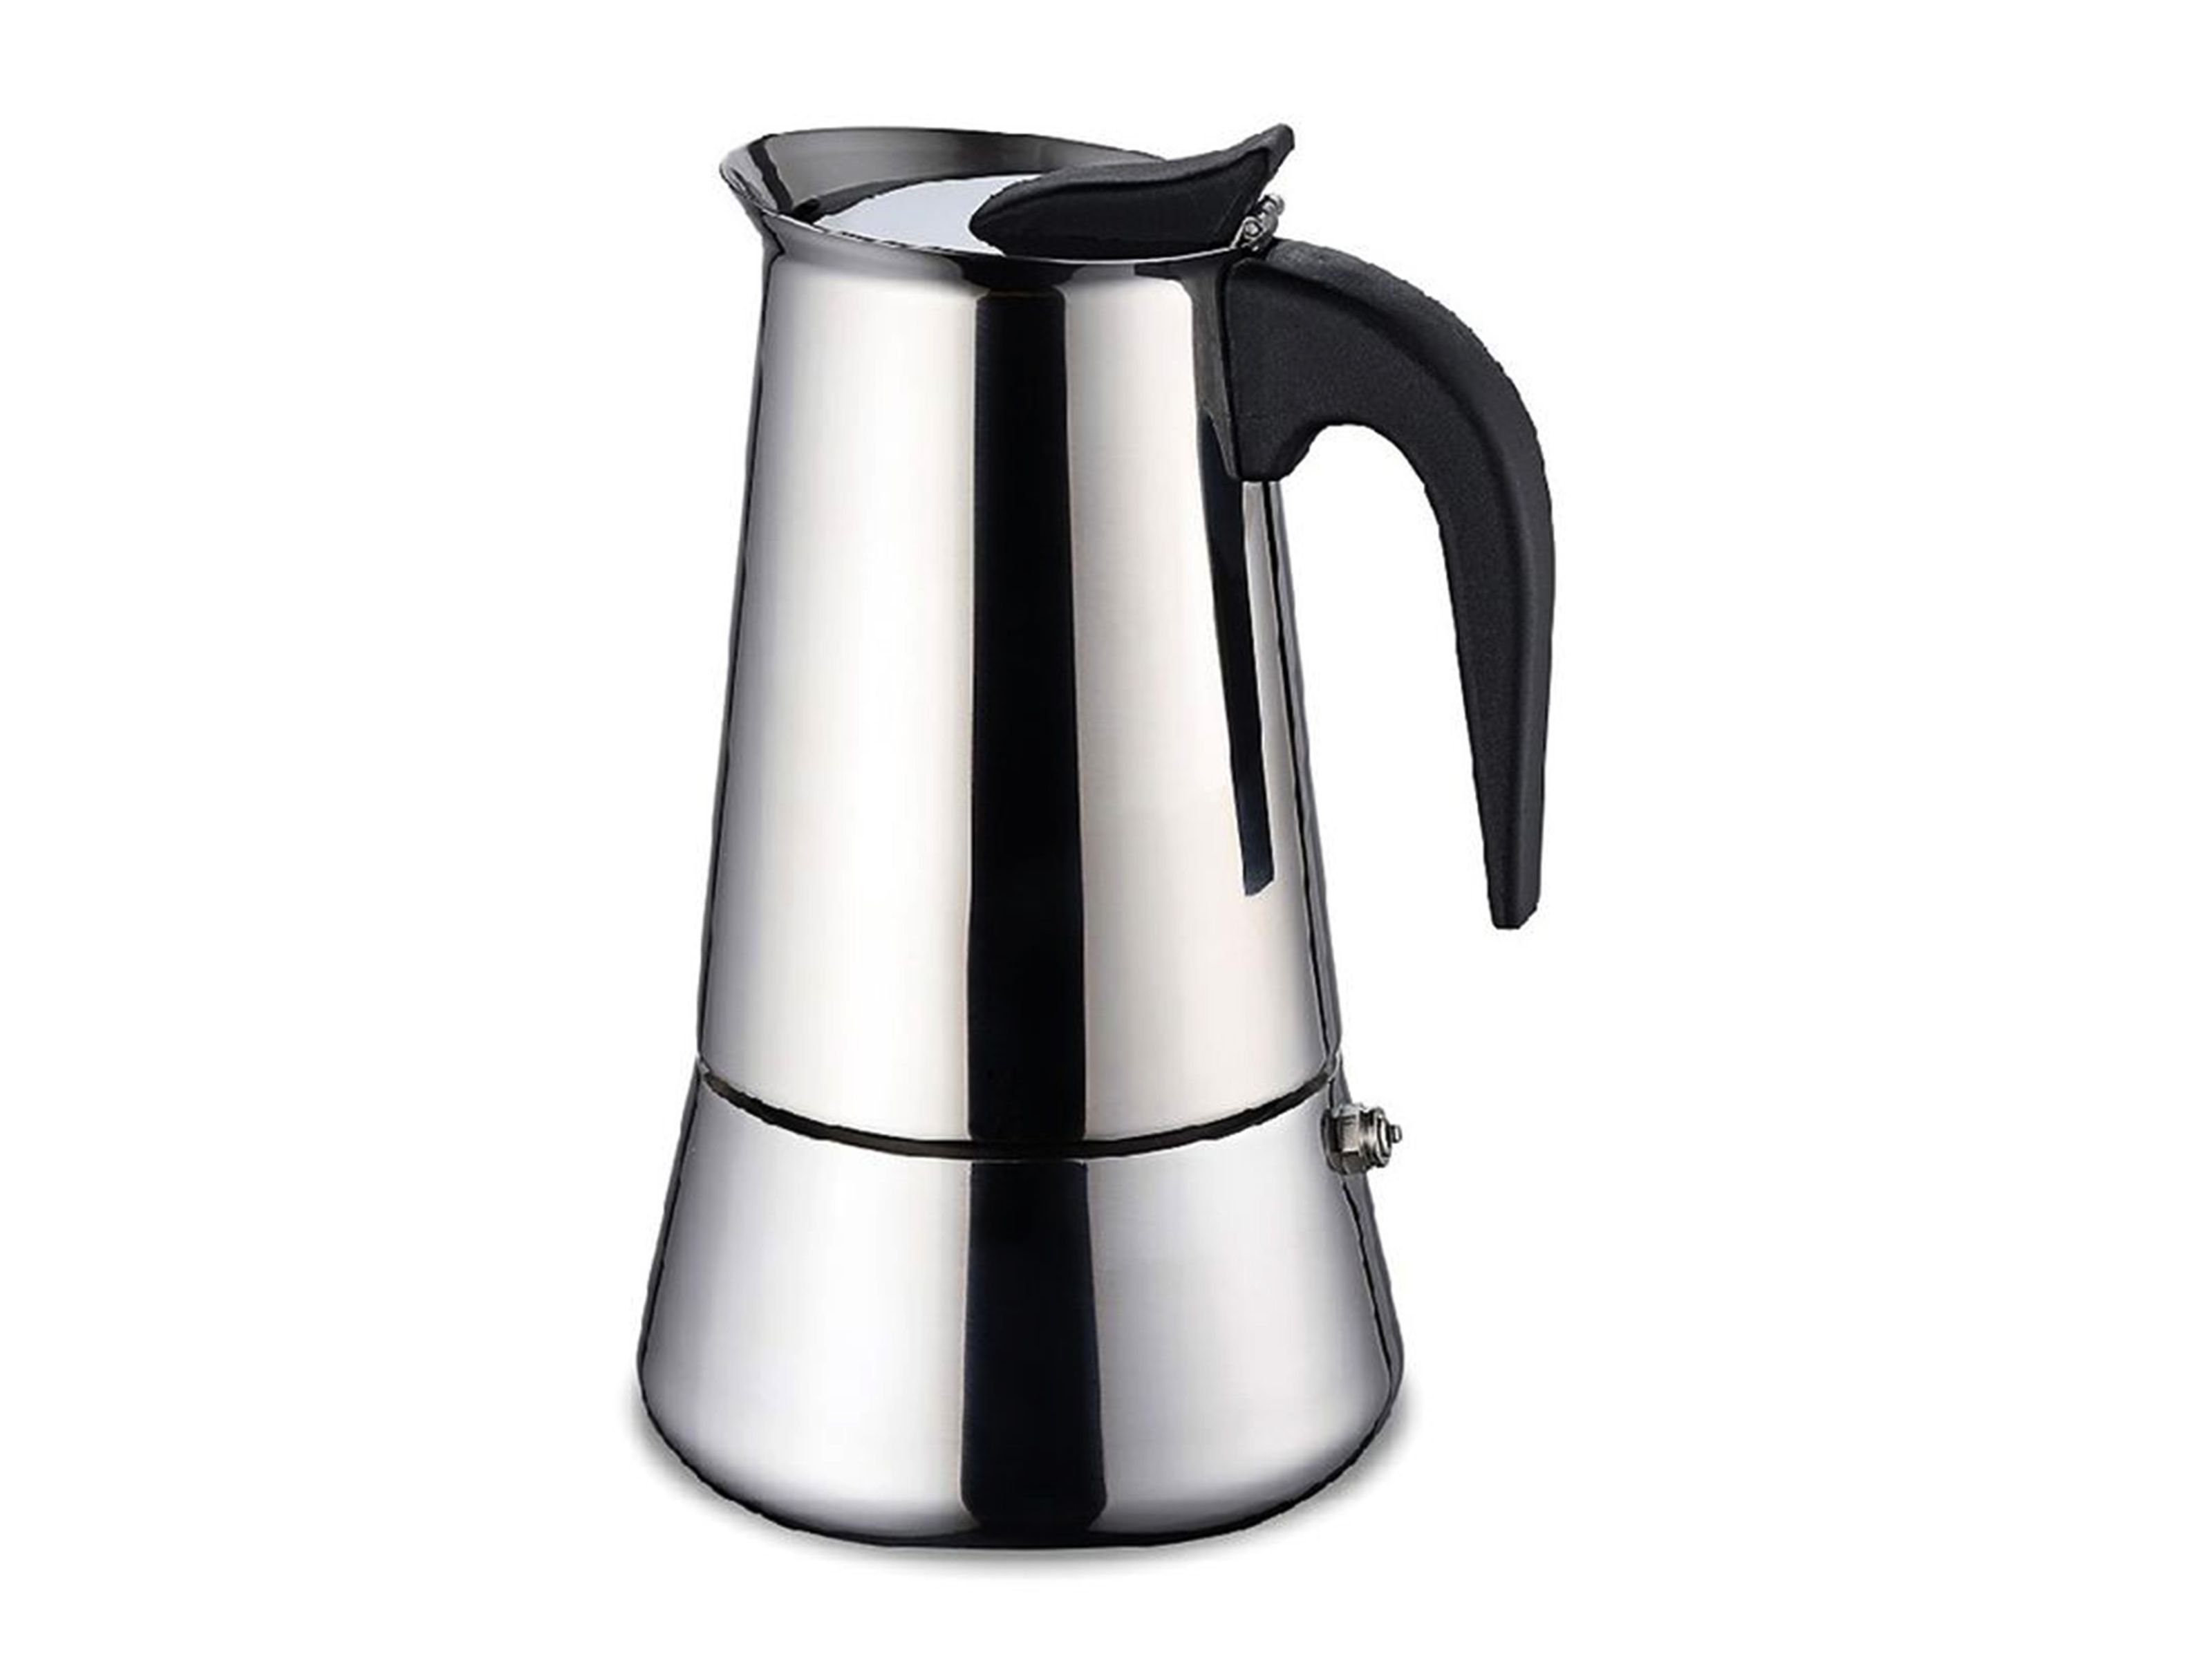 Gravidus Espressokocher Edelstahl Espressokocher 4 Tassen Sicherheitsventil Induktion  Mokkakanne 200 ml